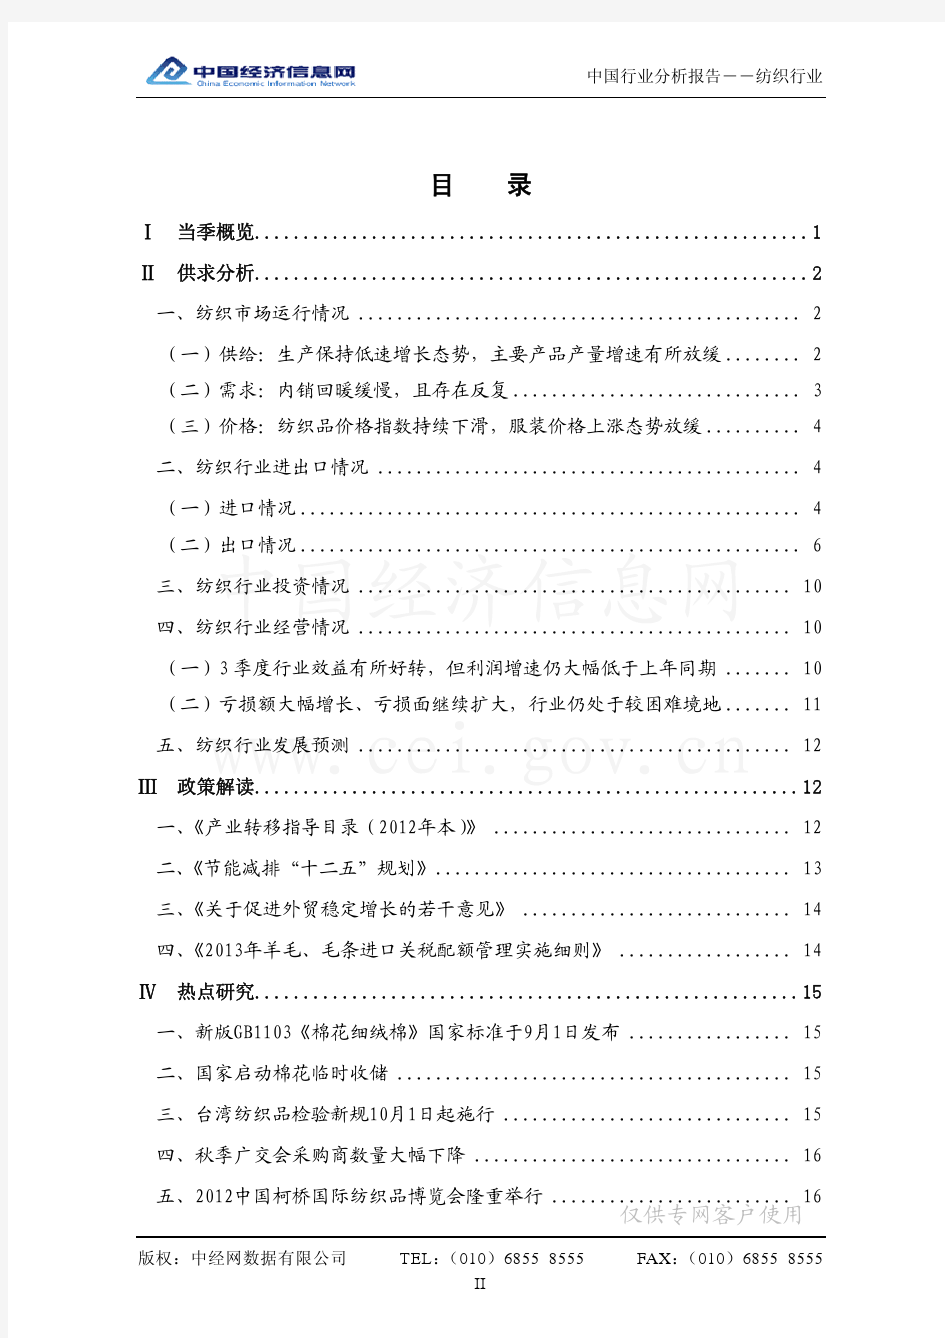 2012年11月26日[产行业信息](中国纺织行业分析报告)